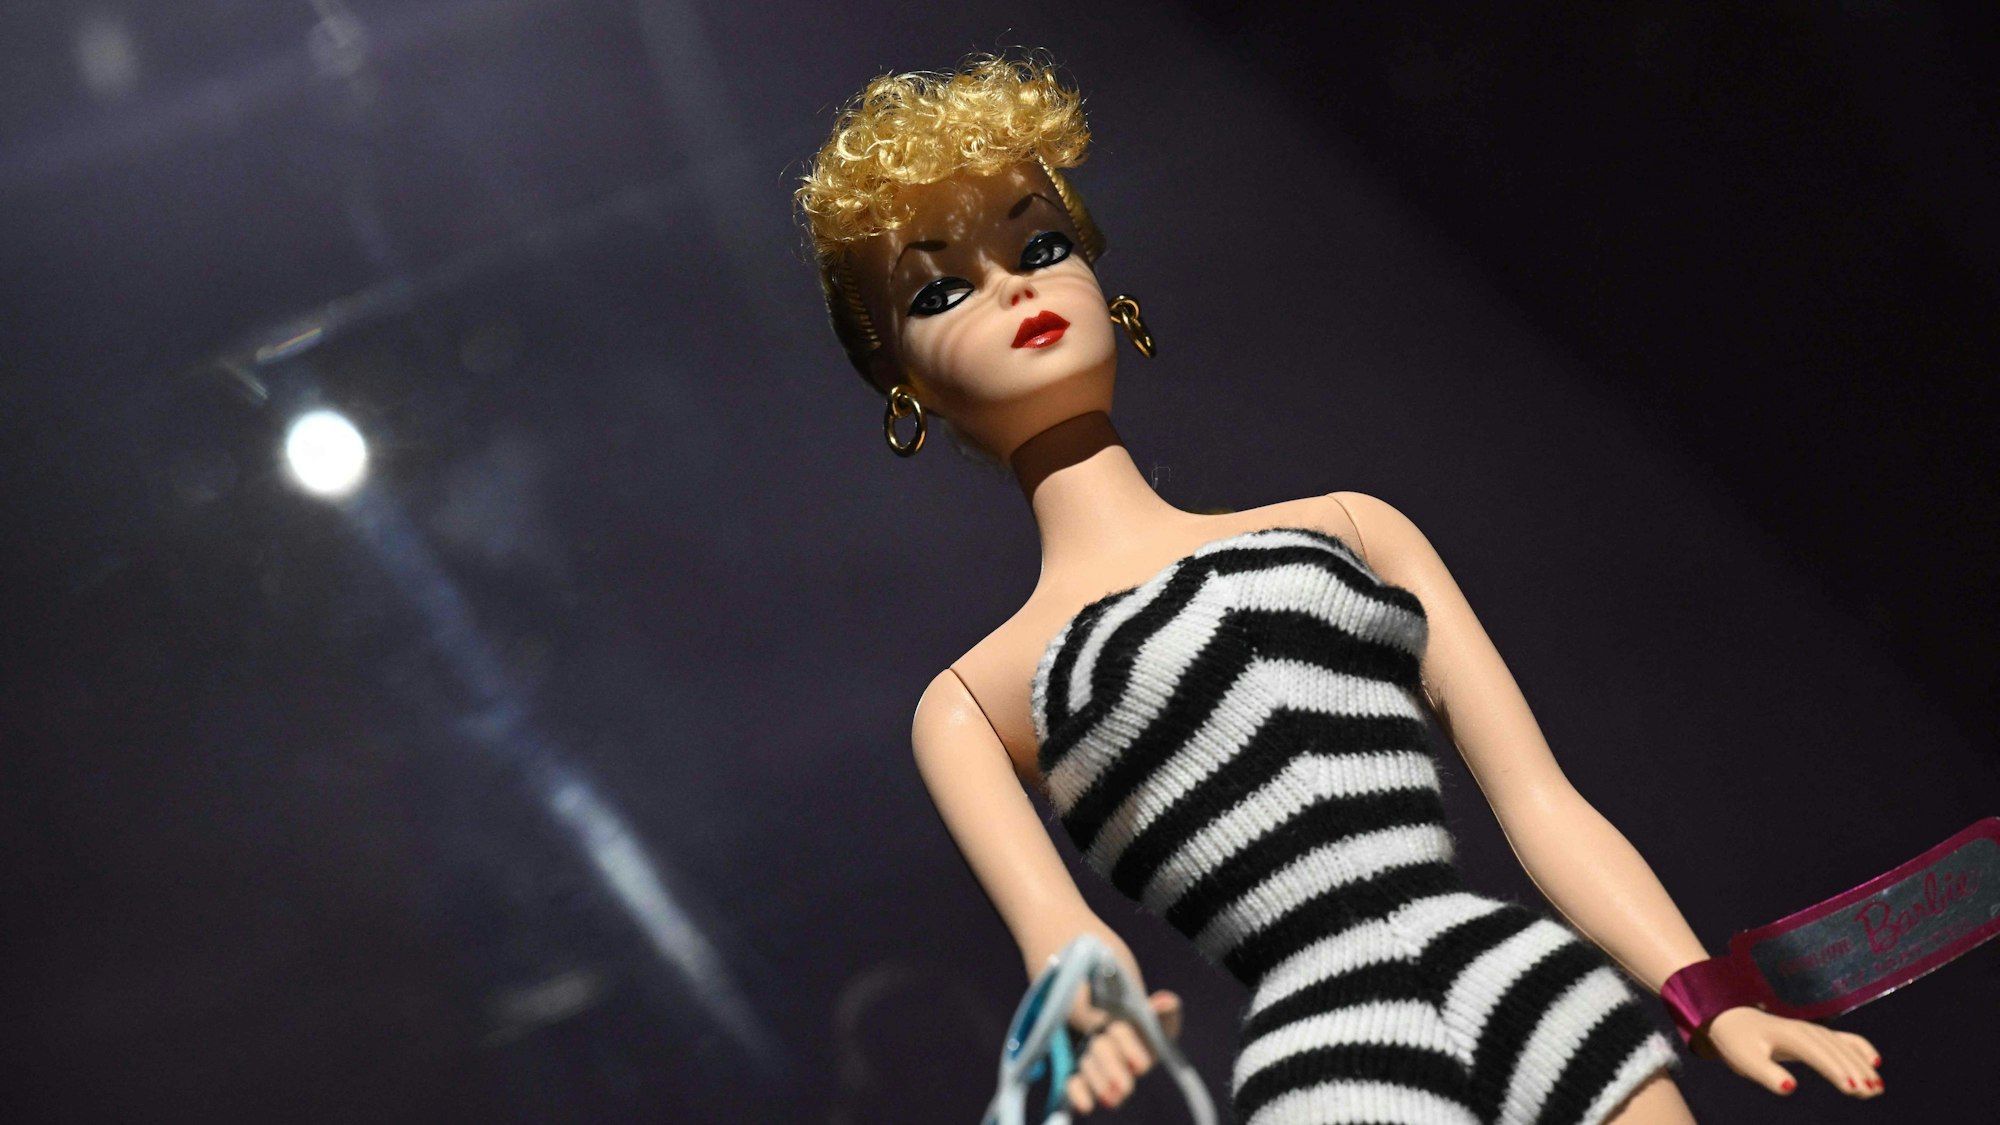 Die erste Barbie-Puppe aus dem Jahr 1959 trägt einen schwarz-weiß gestreiften Badeanzug.